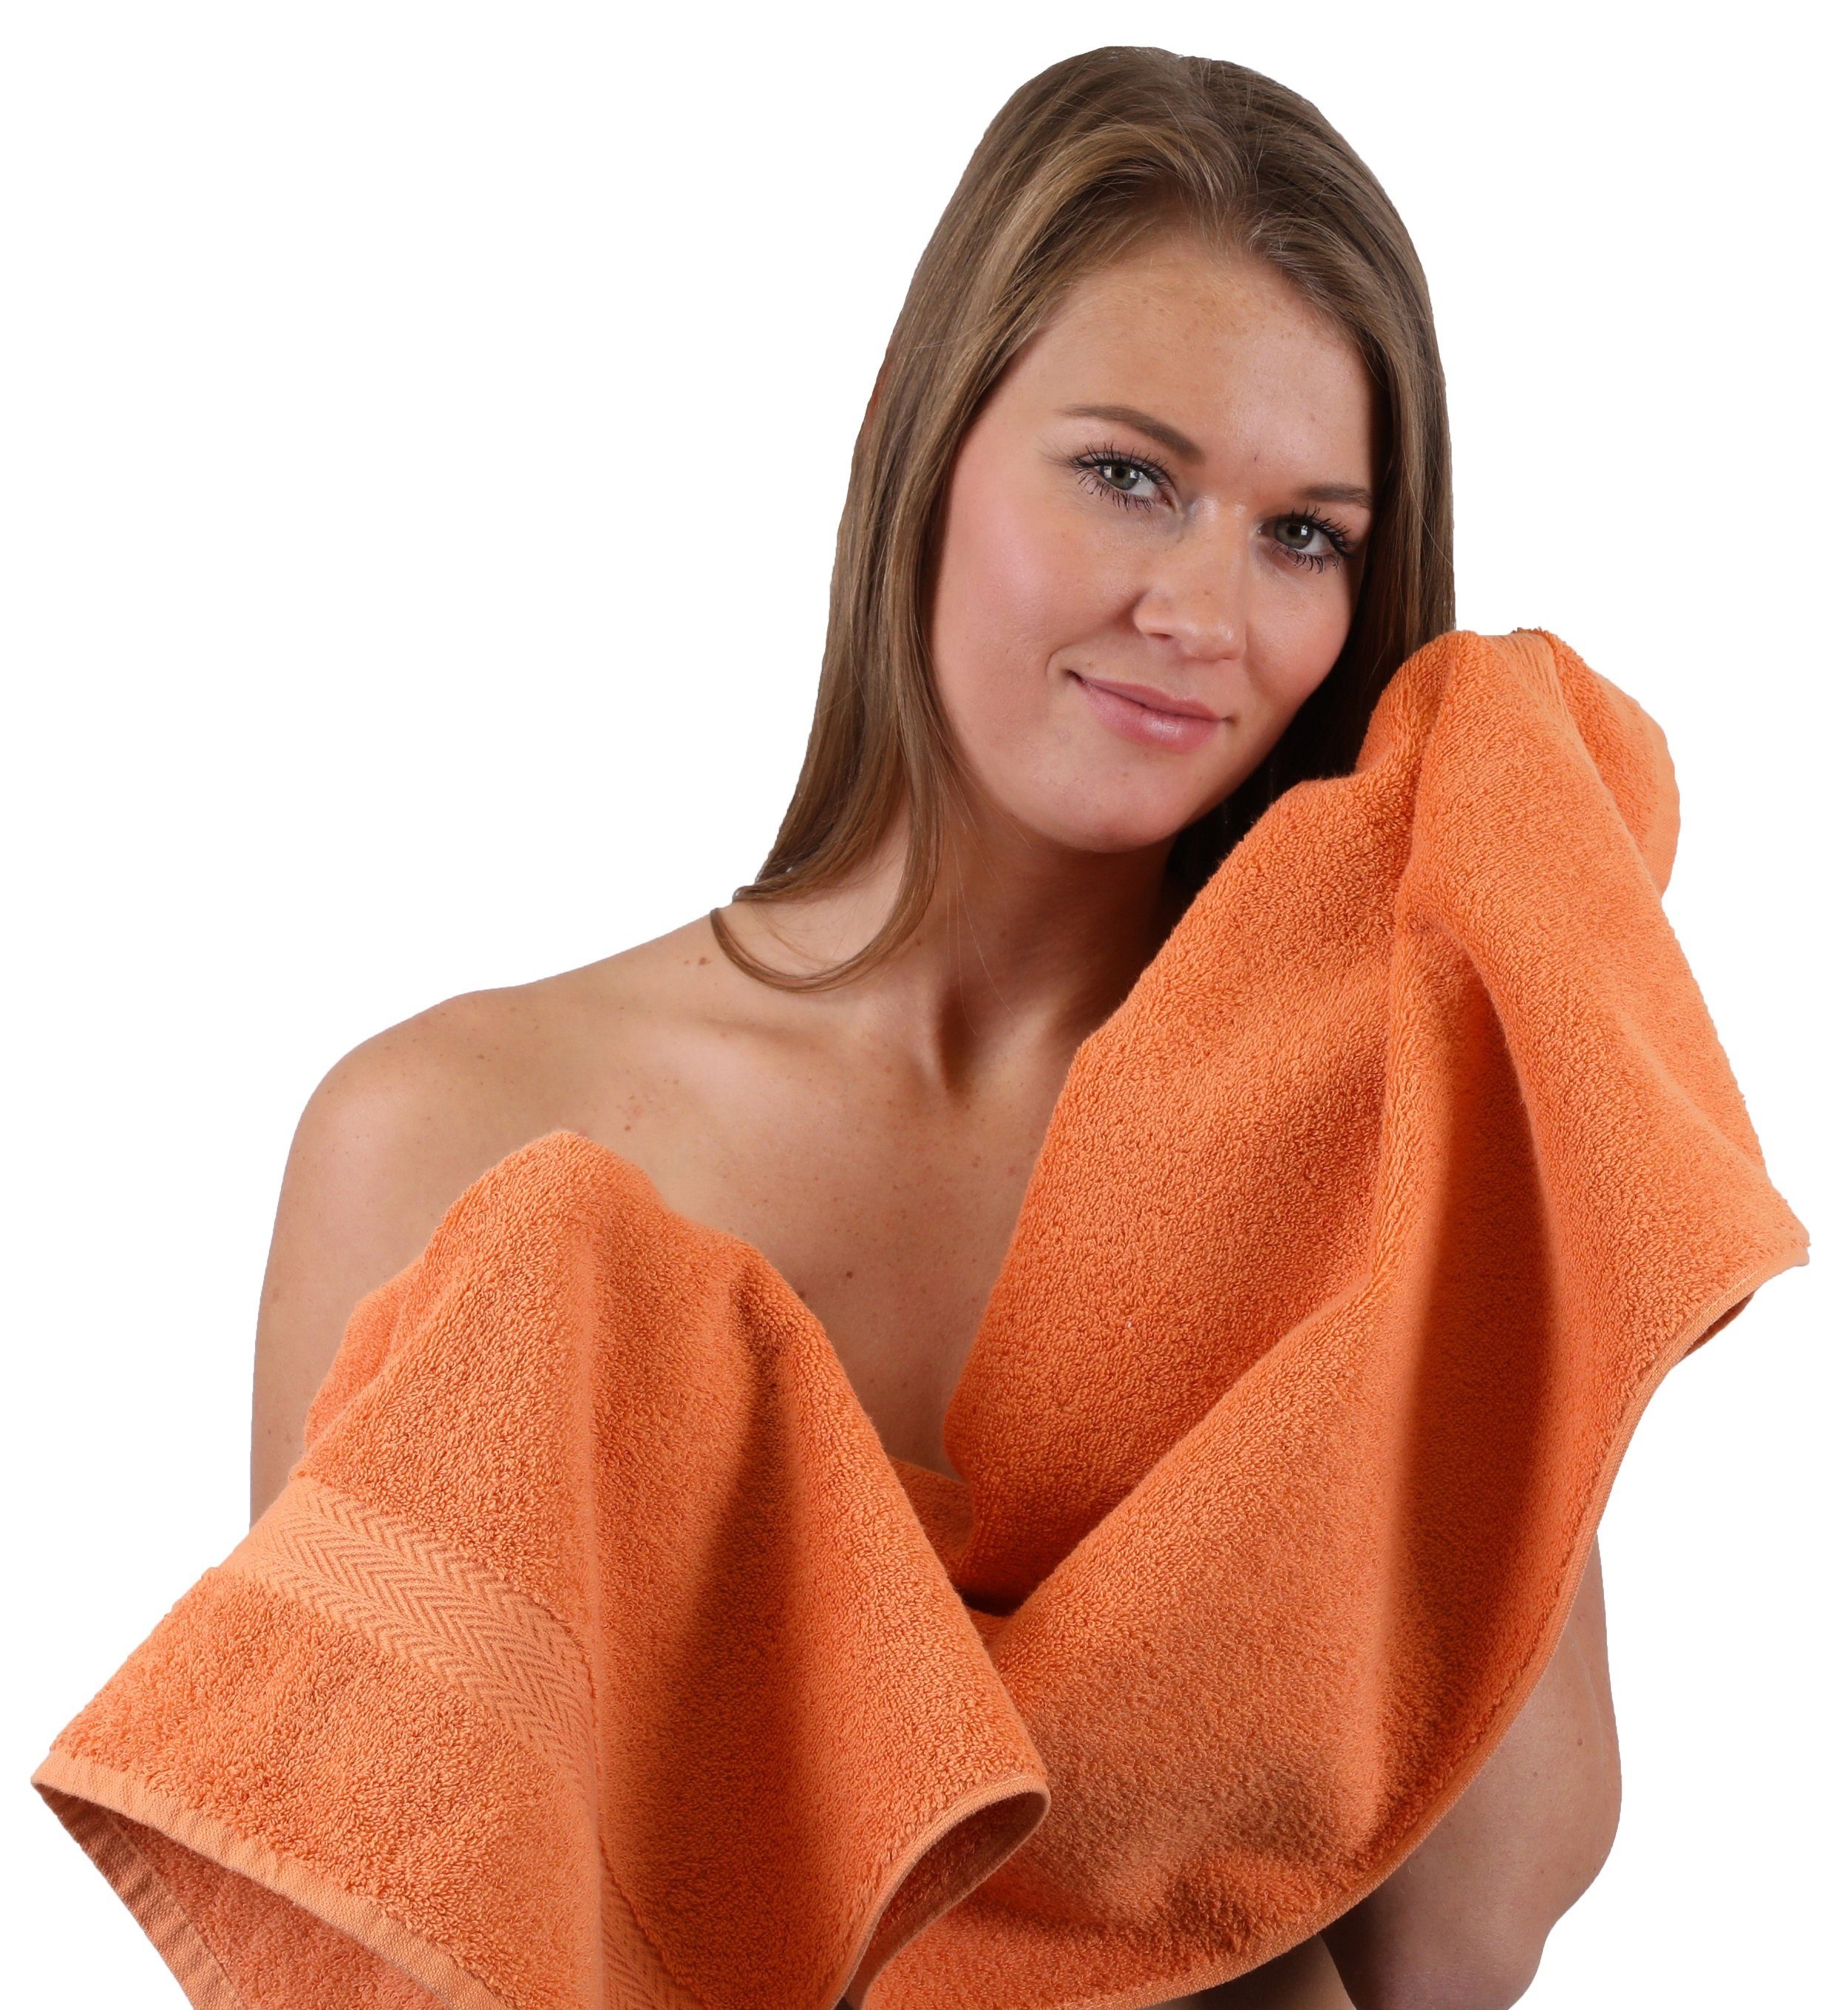 Handtuch-Set orange 10-TLG. Baumwolle Farbe Classic Betz Set hellblau, 100% Handtuch und